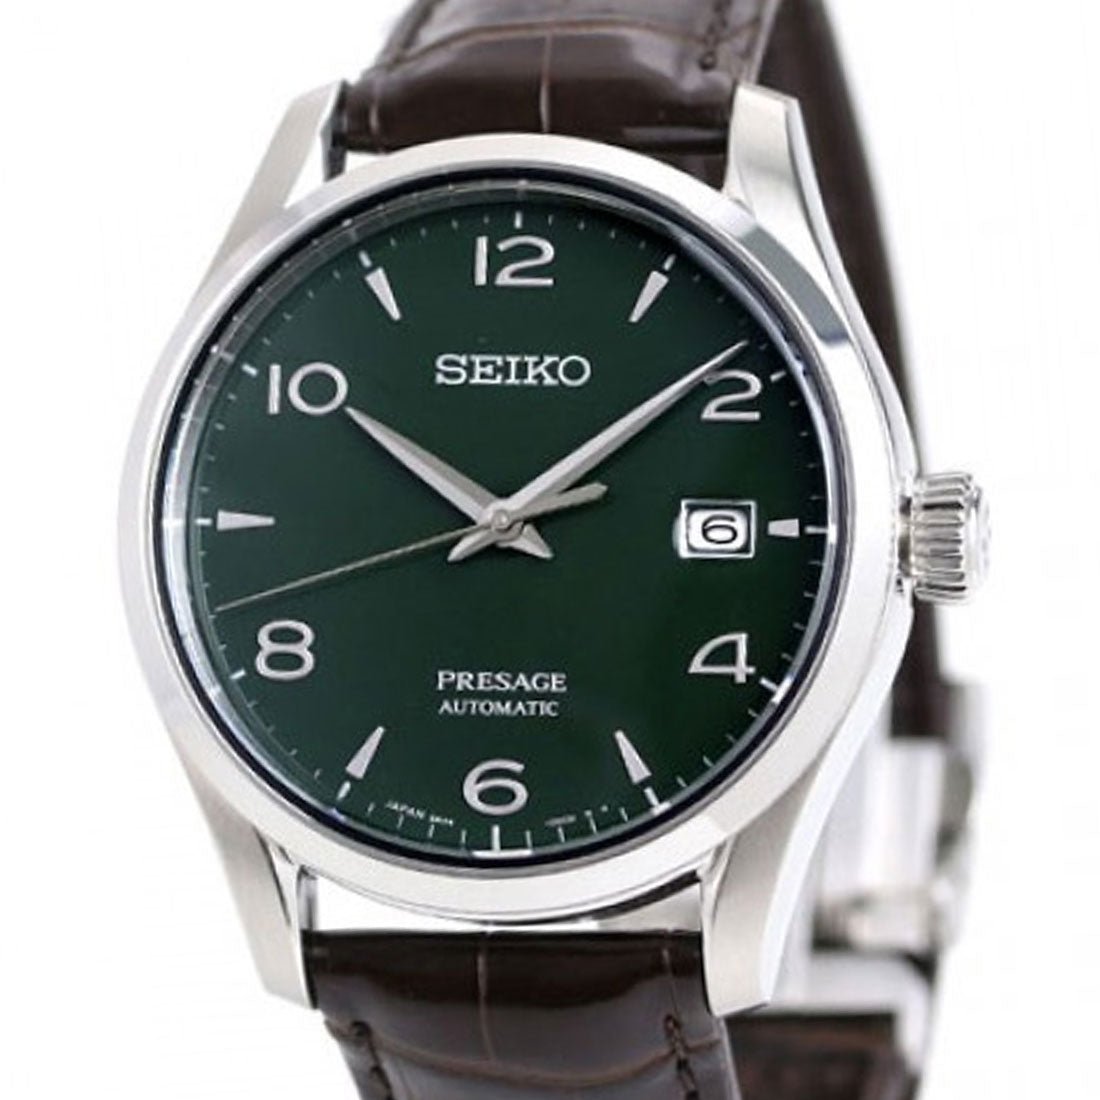 Seiko Presage Automatic Green Enamel JDM Watch SARX063 -Seiko